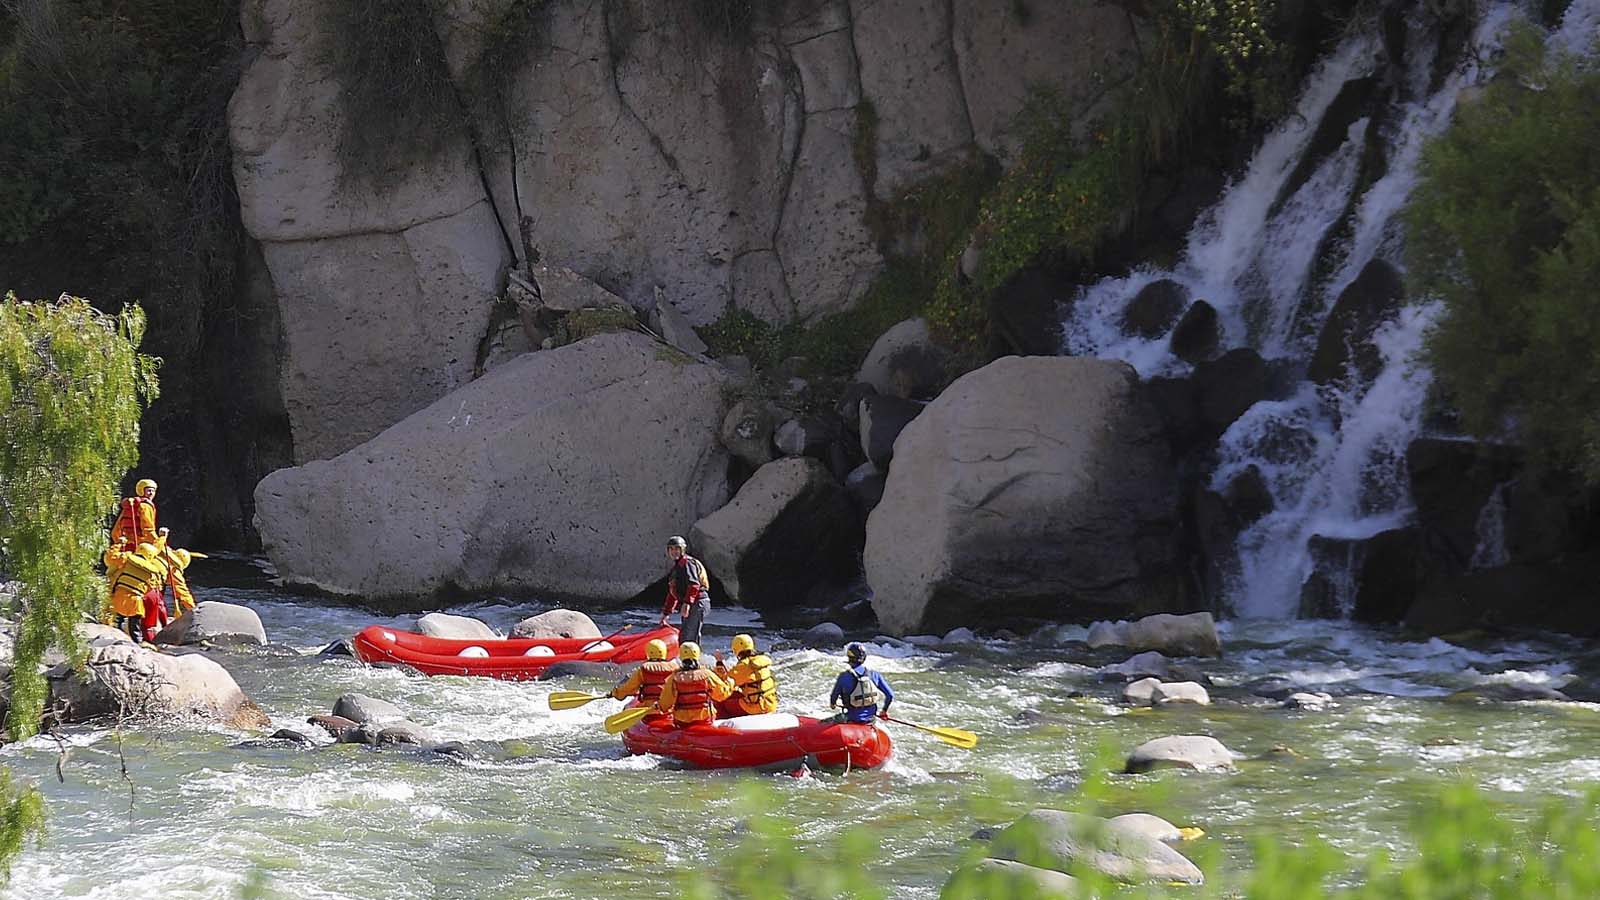 Foto 3 de Rafting en el río Chili 